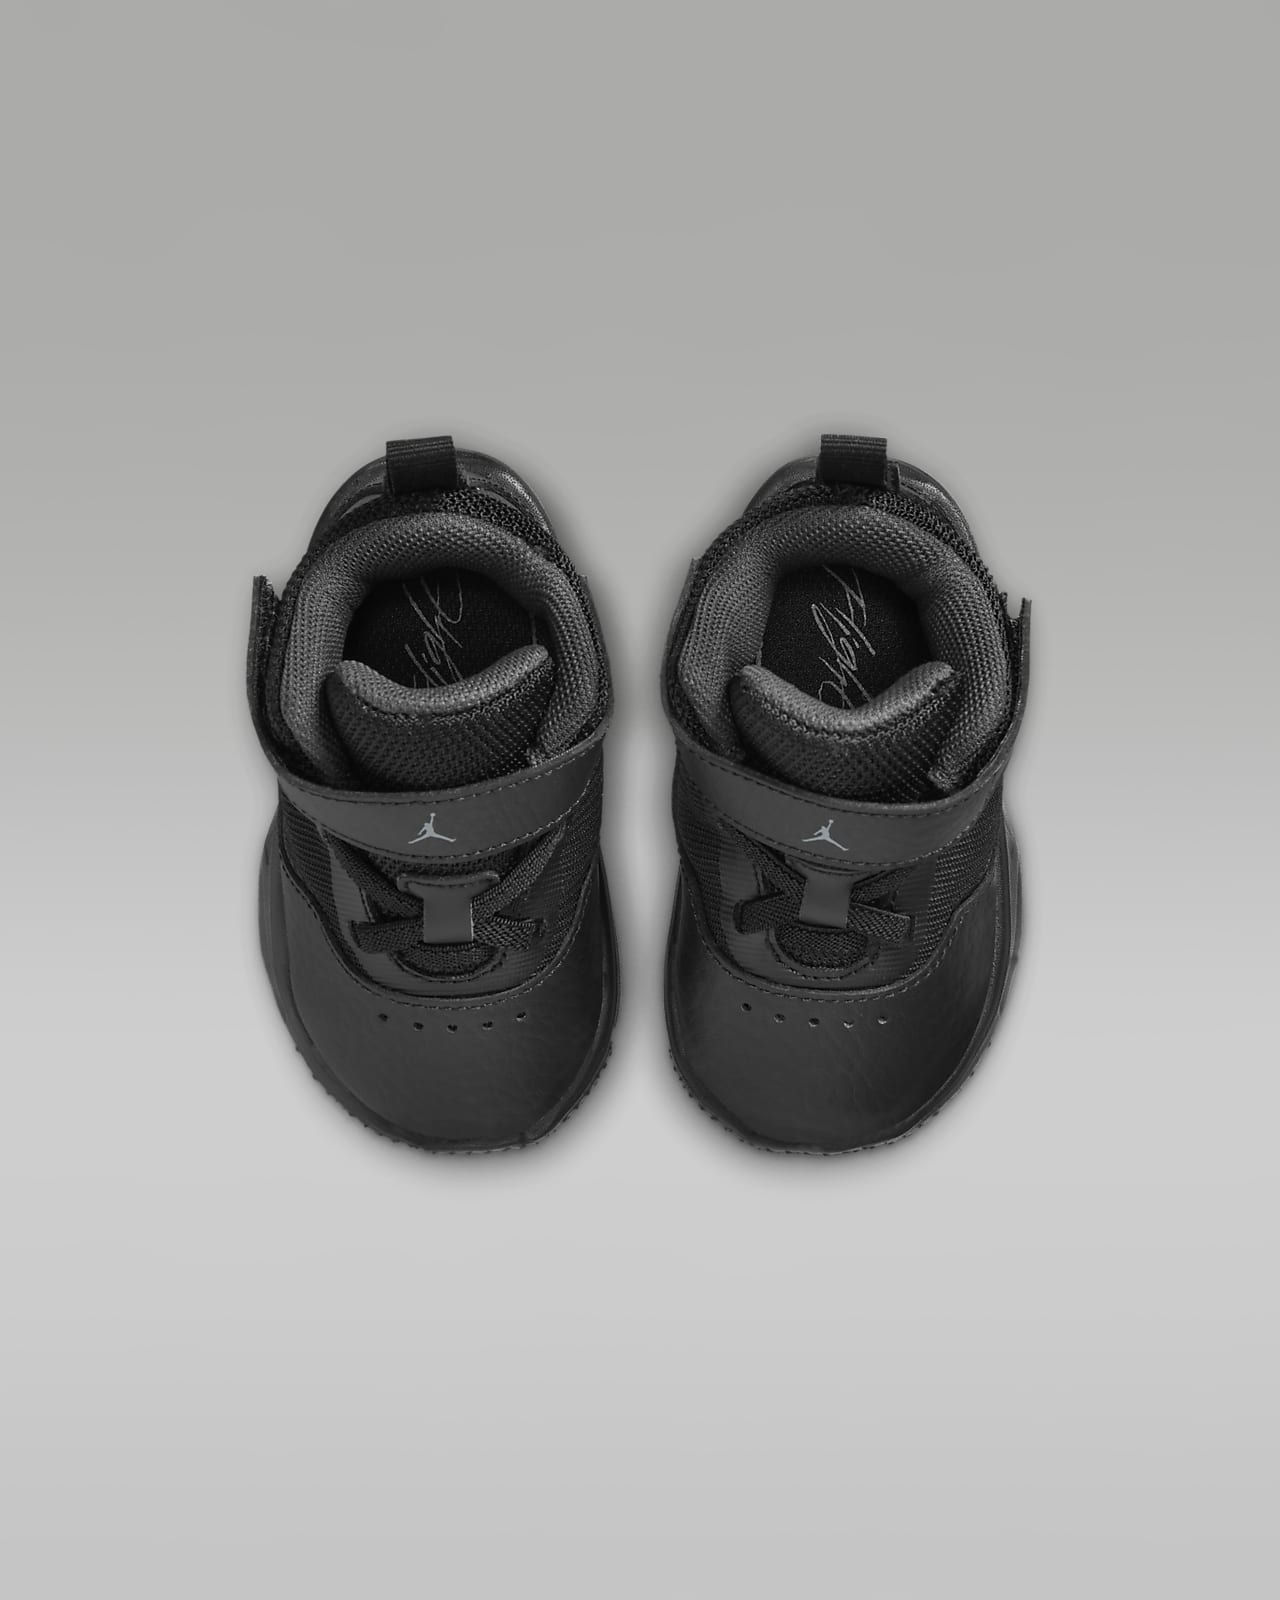 Baby Jordans 4 Retro Black Cat 2020 (TD) 3c